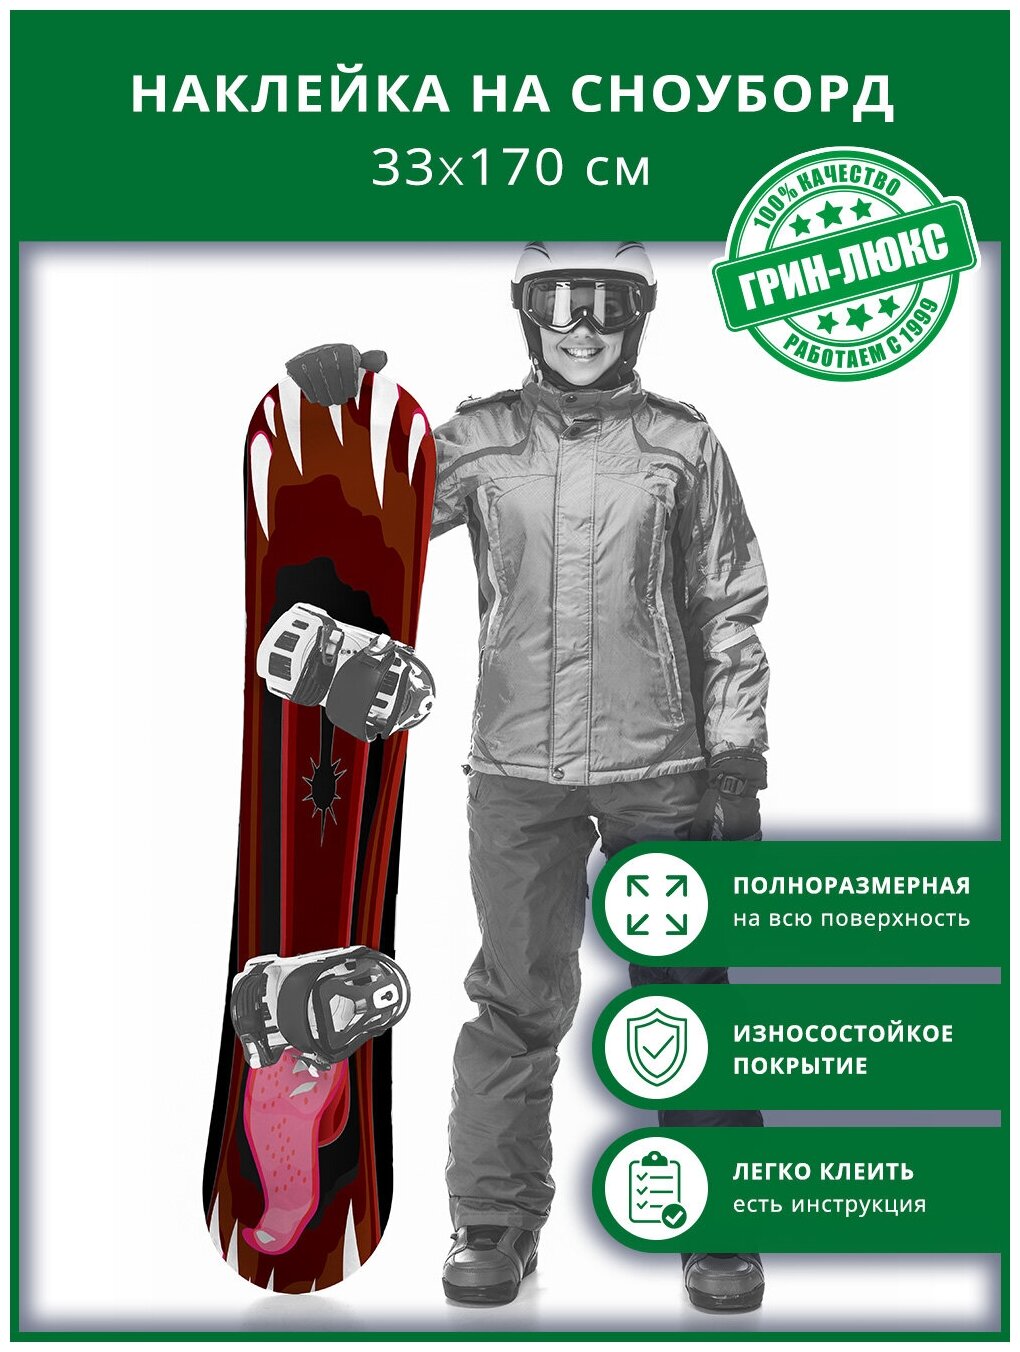 Наклейка на сноуборд с защитным глянцевым покрытием 33х170 см "Пасть монстра"